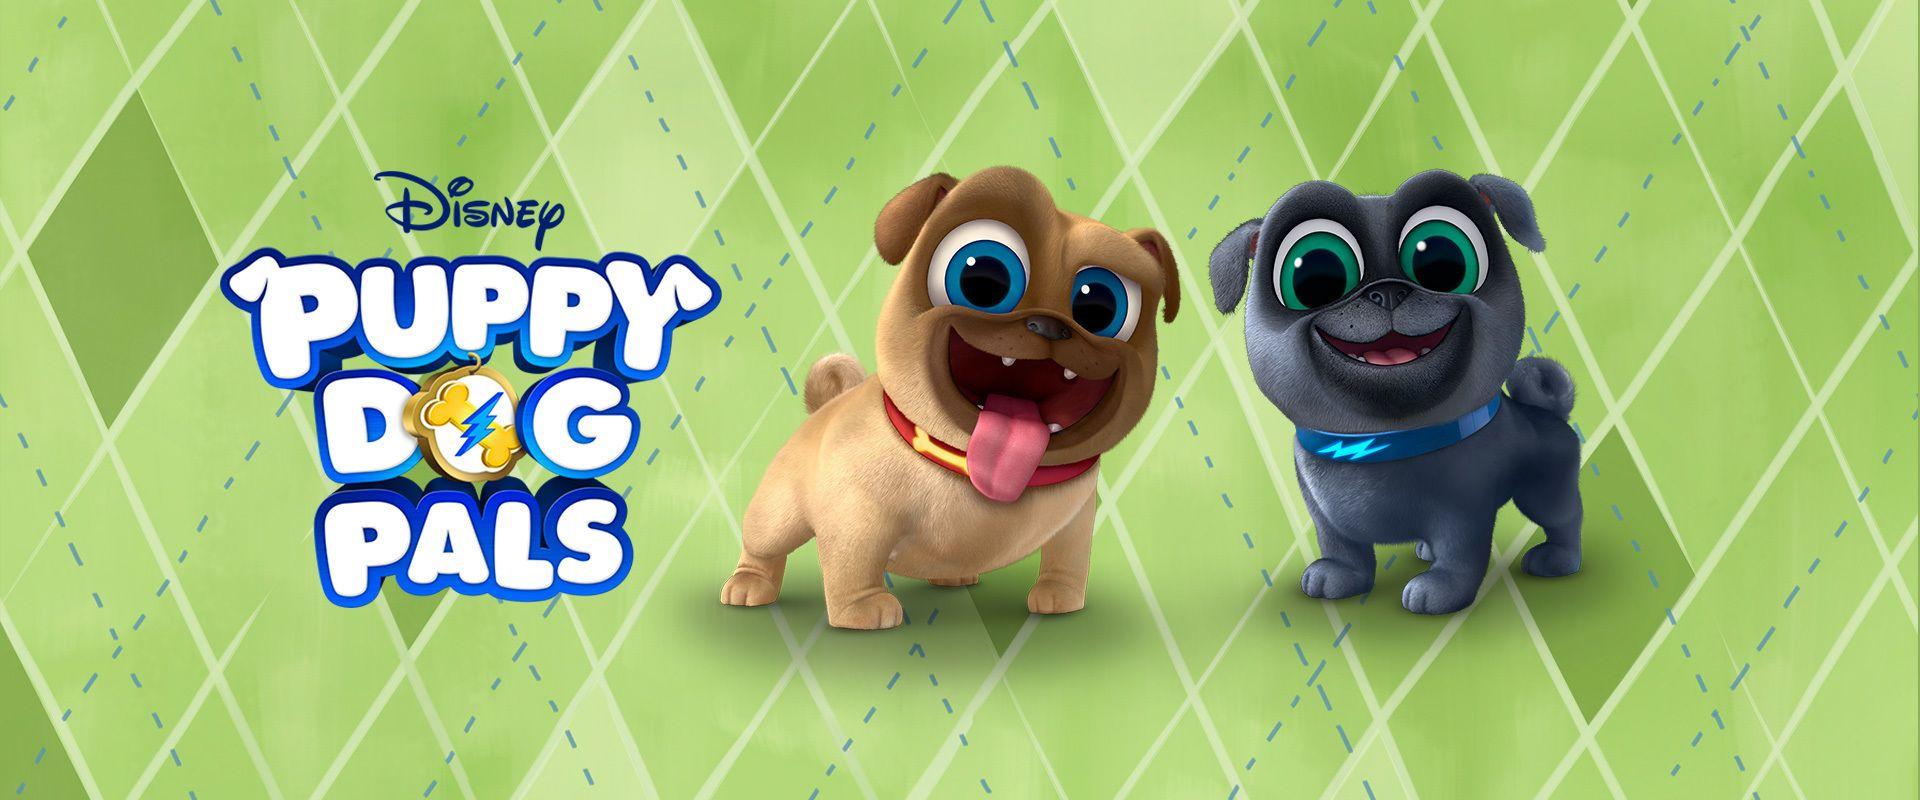 Puppy Dog Pals. Disney TV Shows